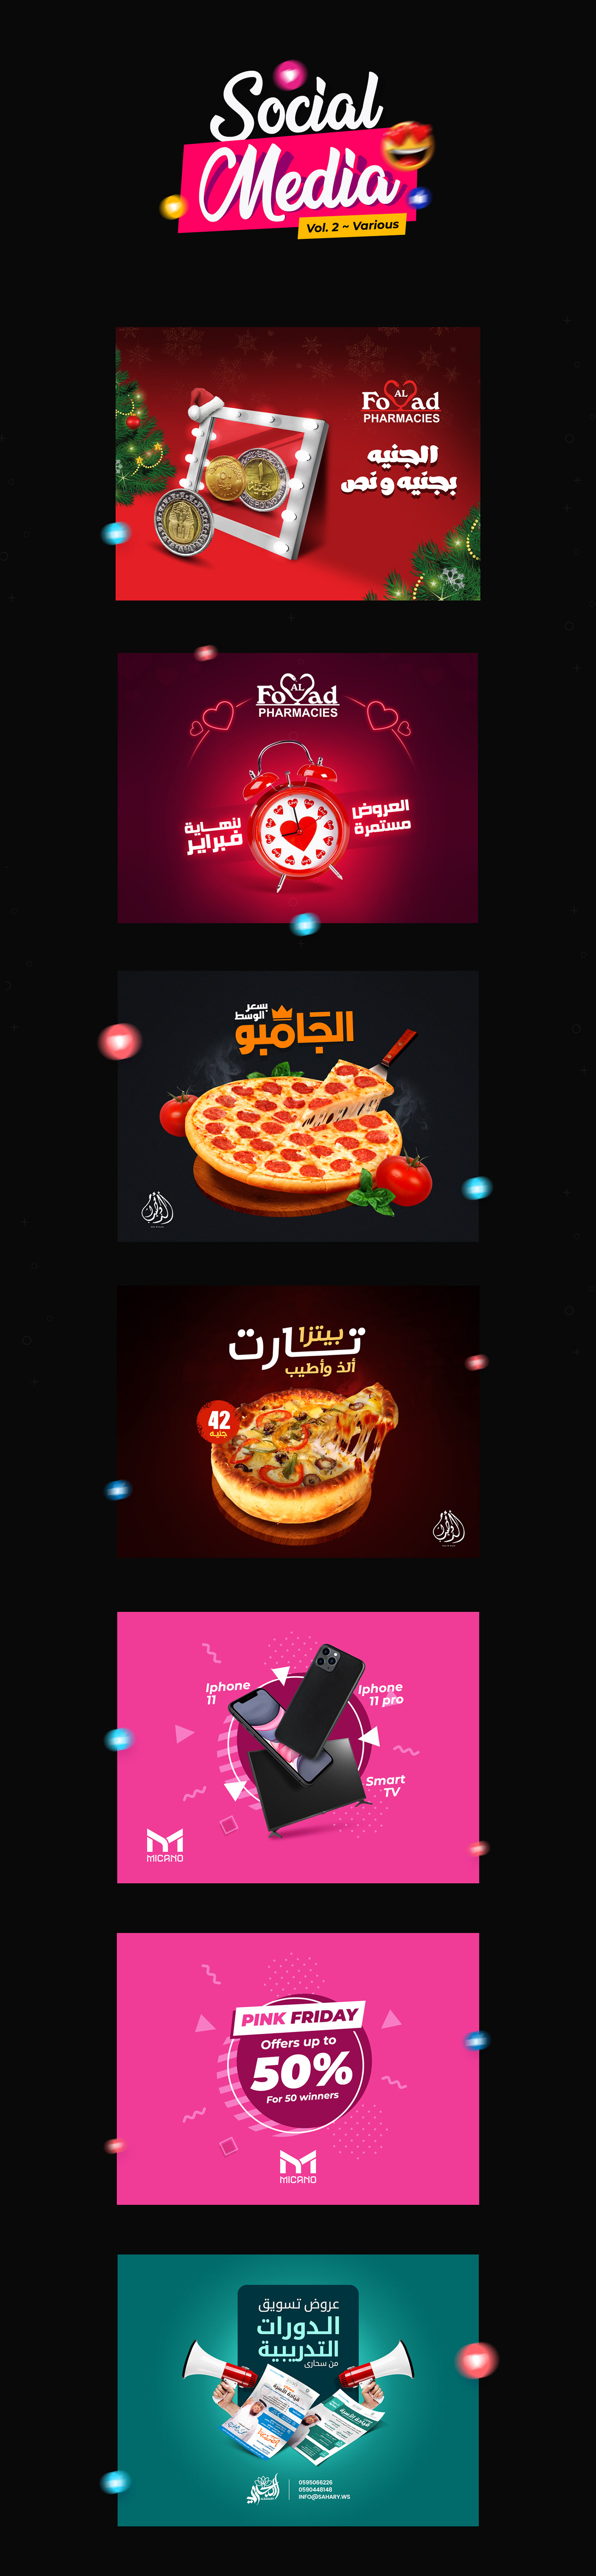 Food  free heart media mirror offer Pizza social Socialmedia valentine